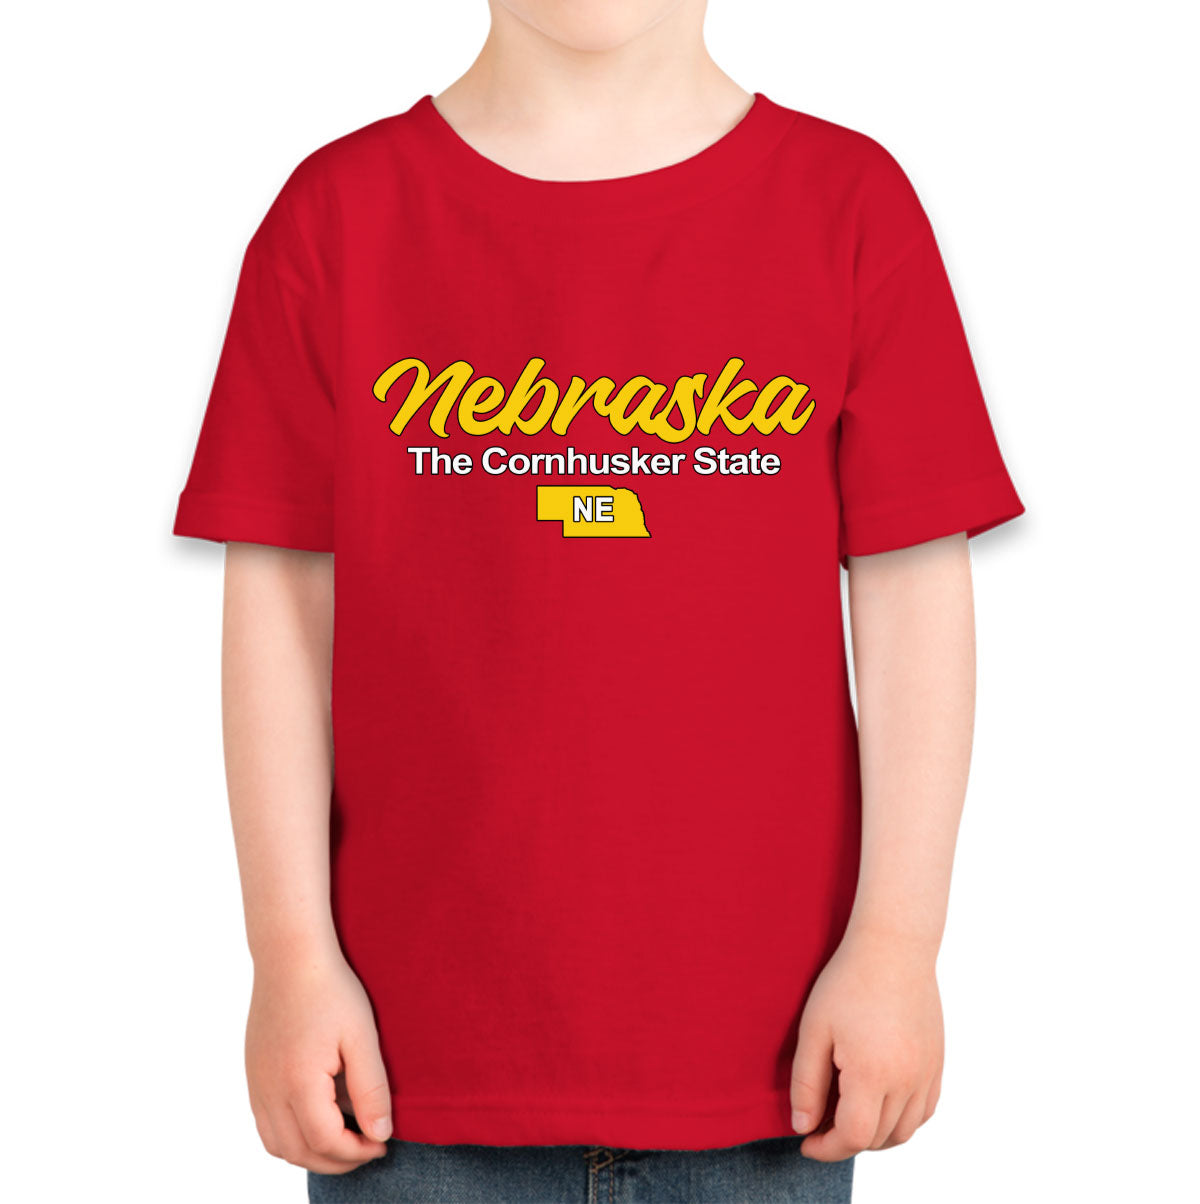 Nebraska The Cornhusker State Toddler T-shirt